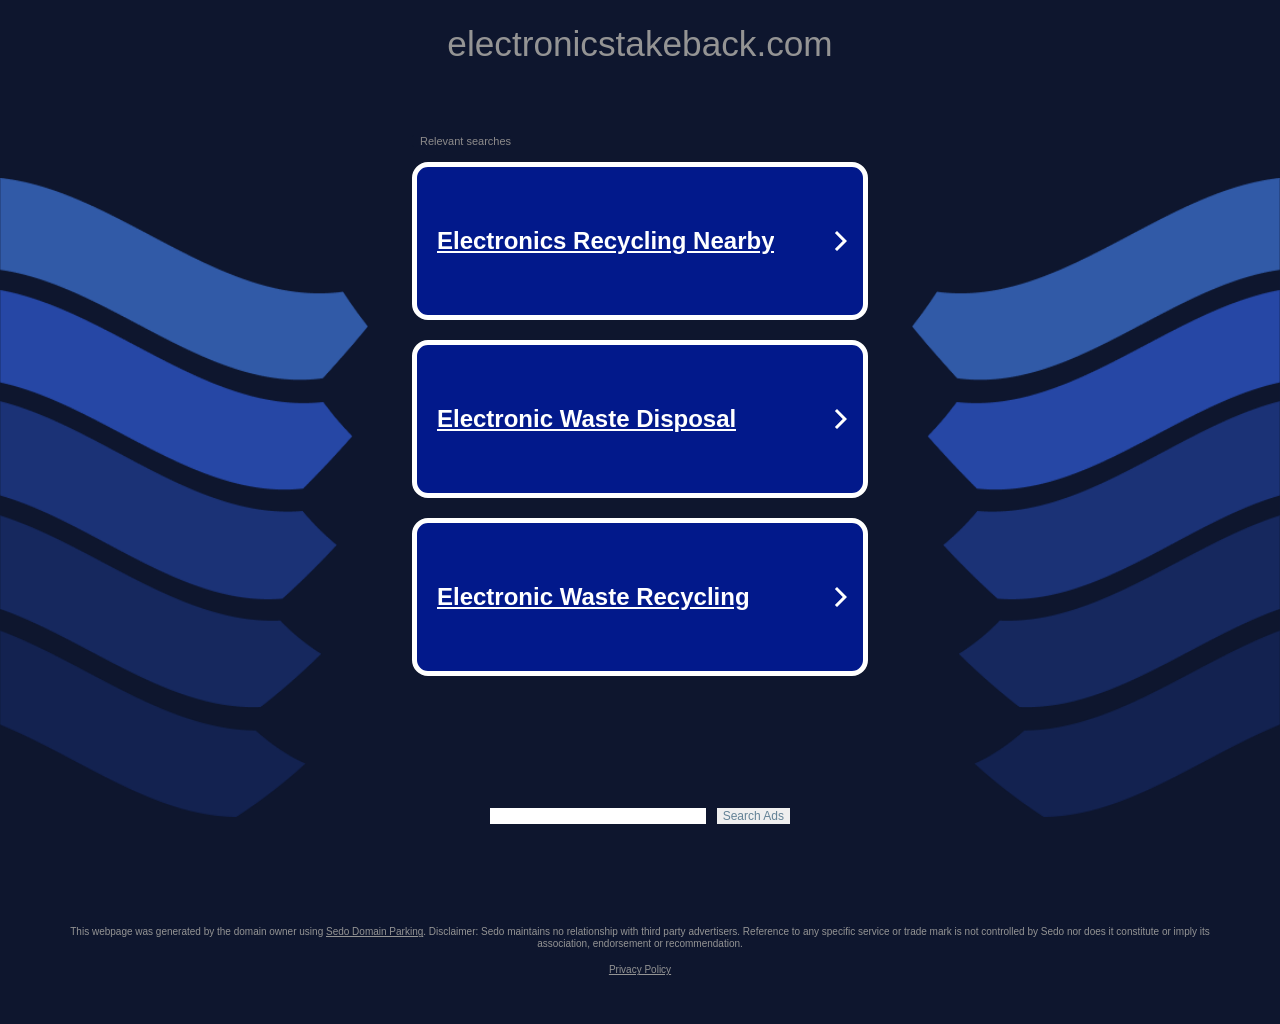 electronicstakeback.com